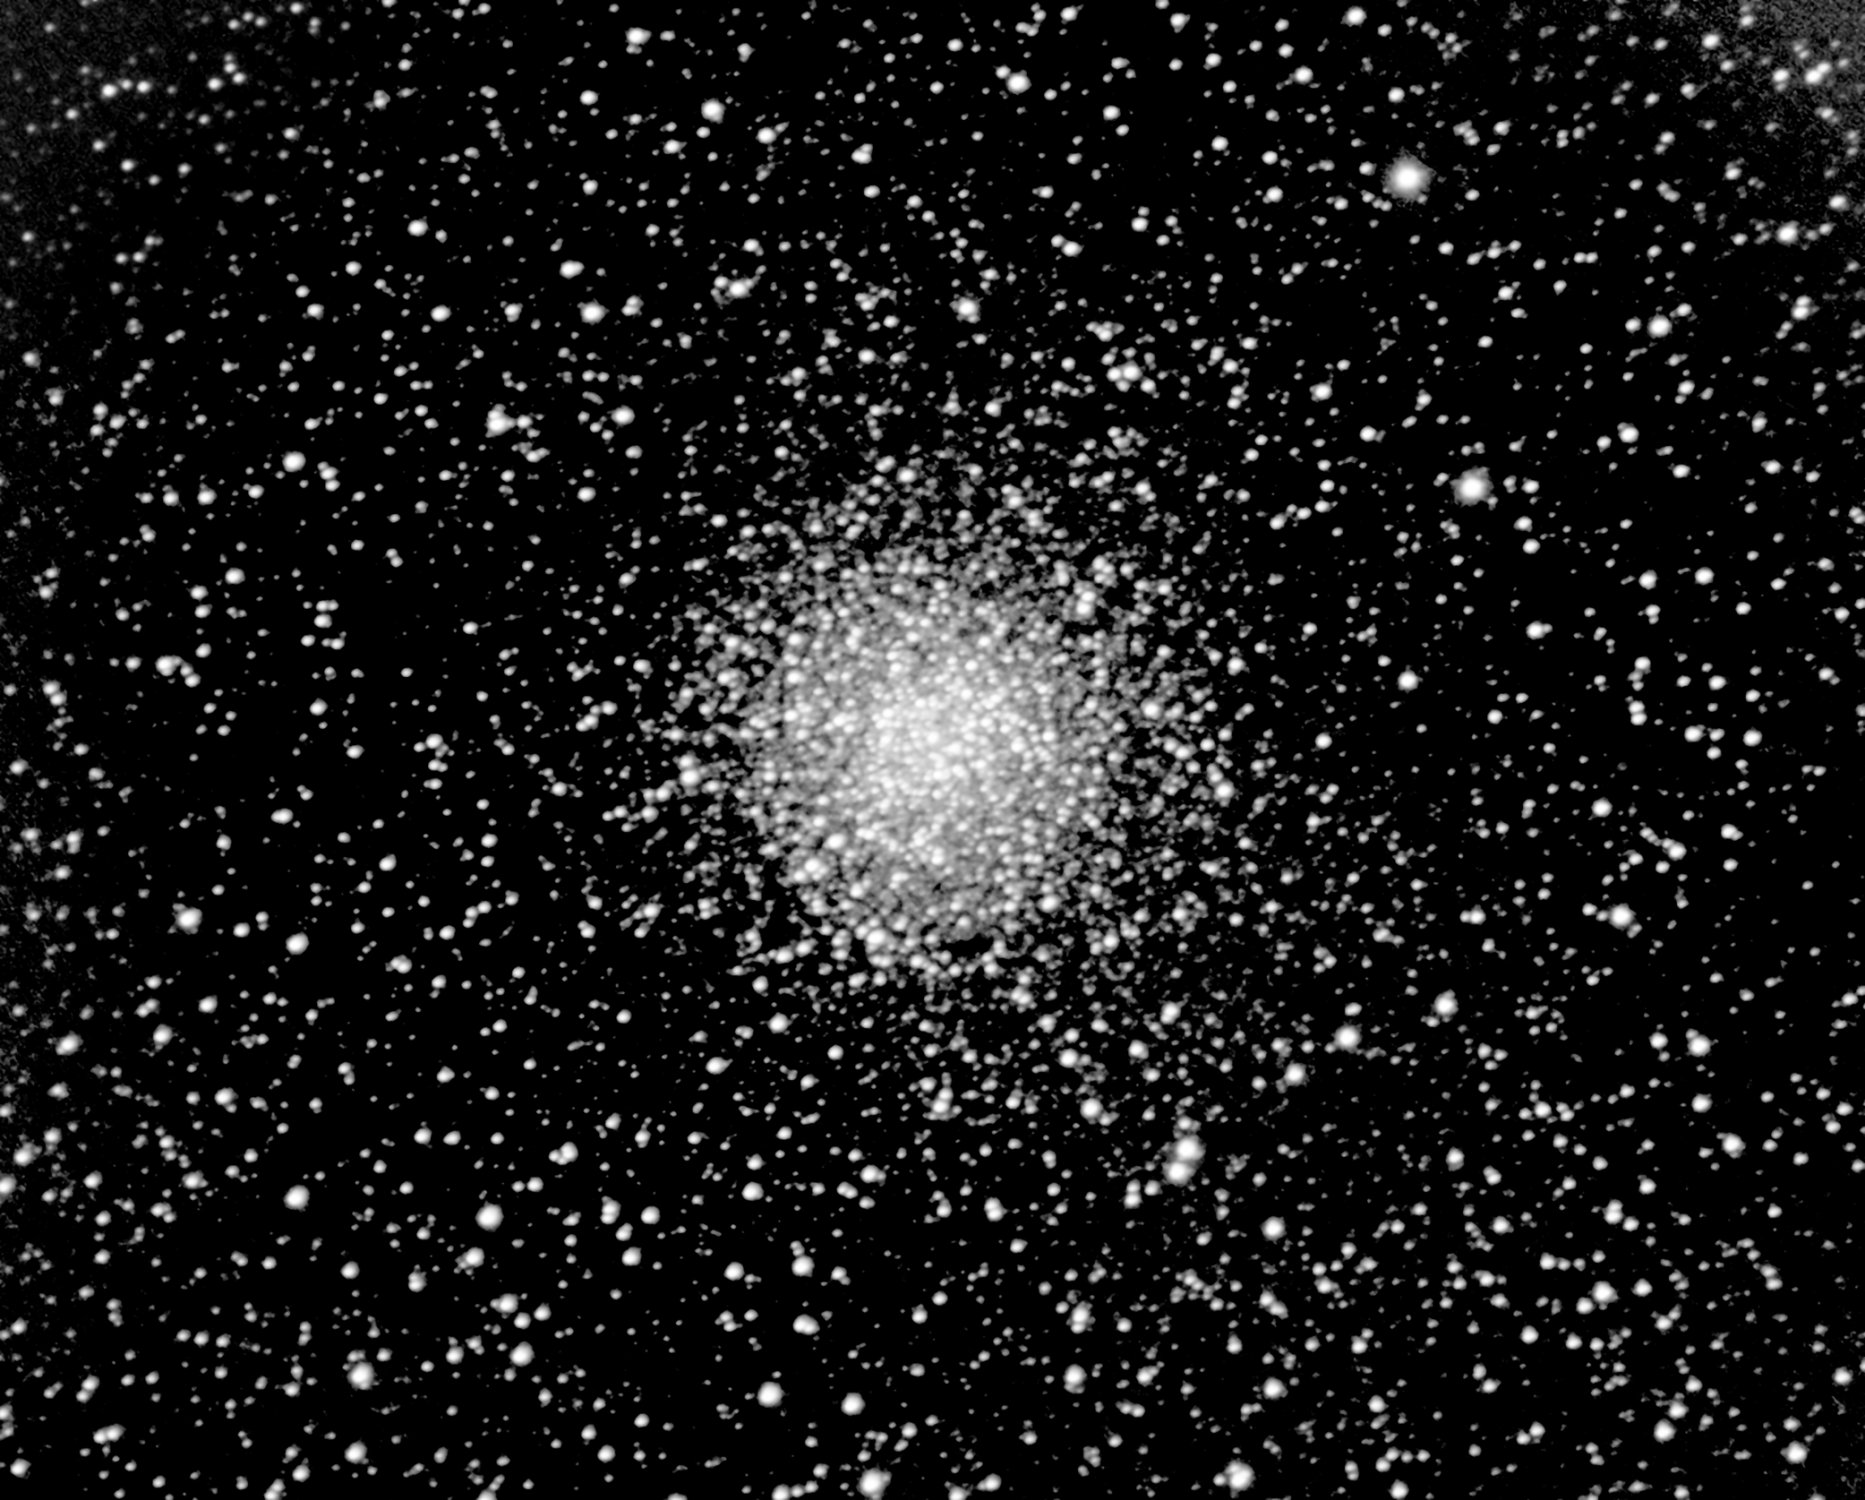 NGC3012